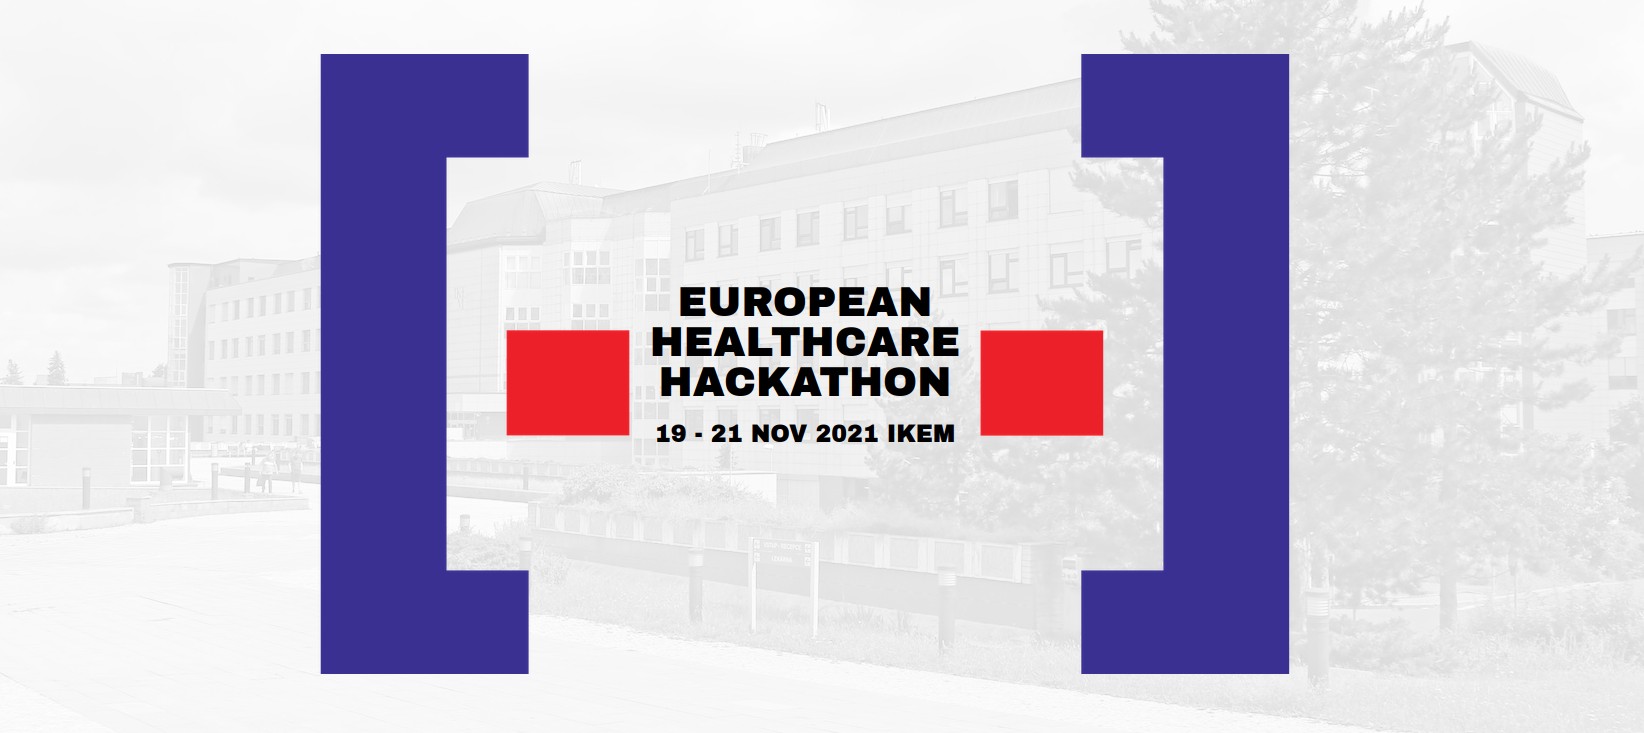 European Healthcare Hackathon 2021